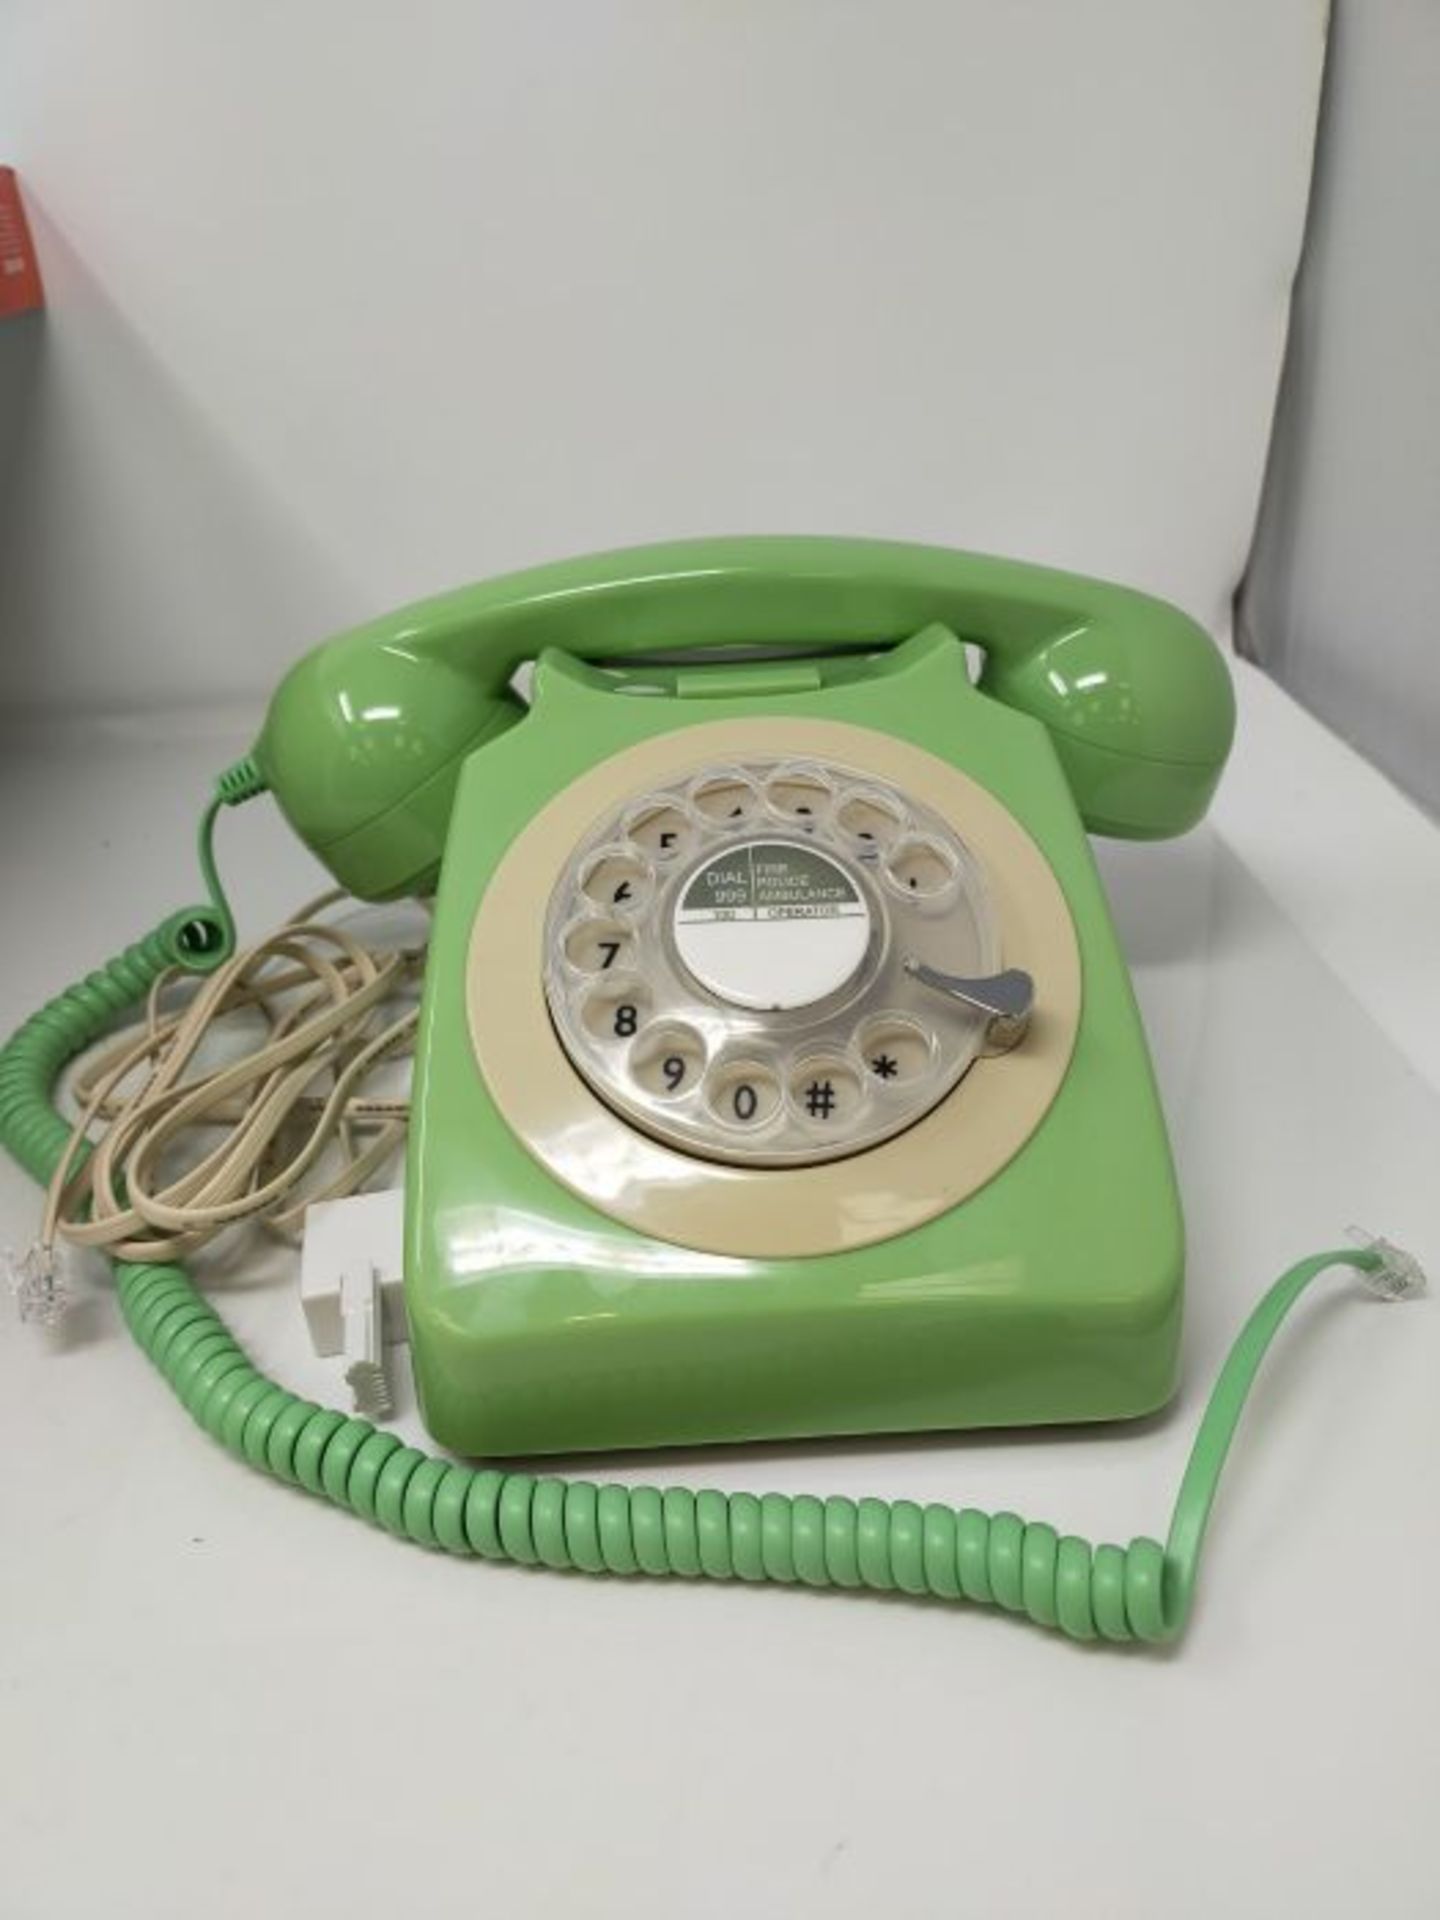 RRP £51.00 GPO 746ROTARYGREEN Retro Telefon mit WÃ¤hlscheibe im 70er Jahre Design MinzgrÃ¼n - Image 3 of 3